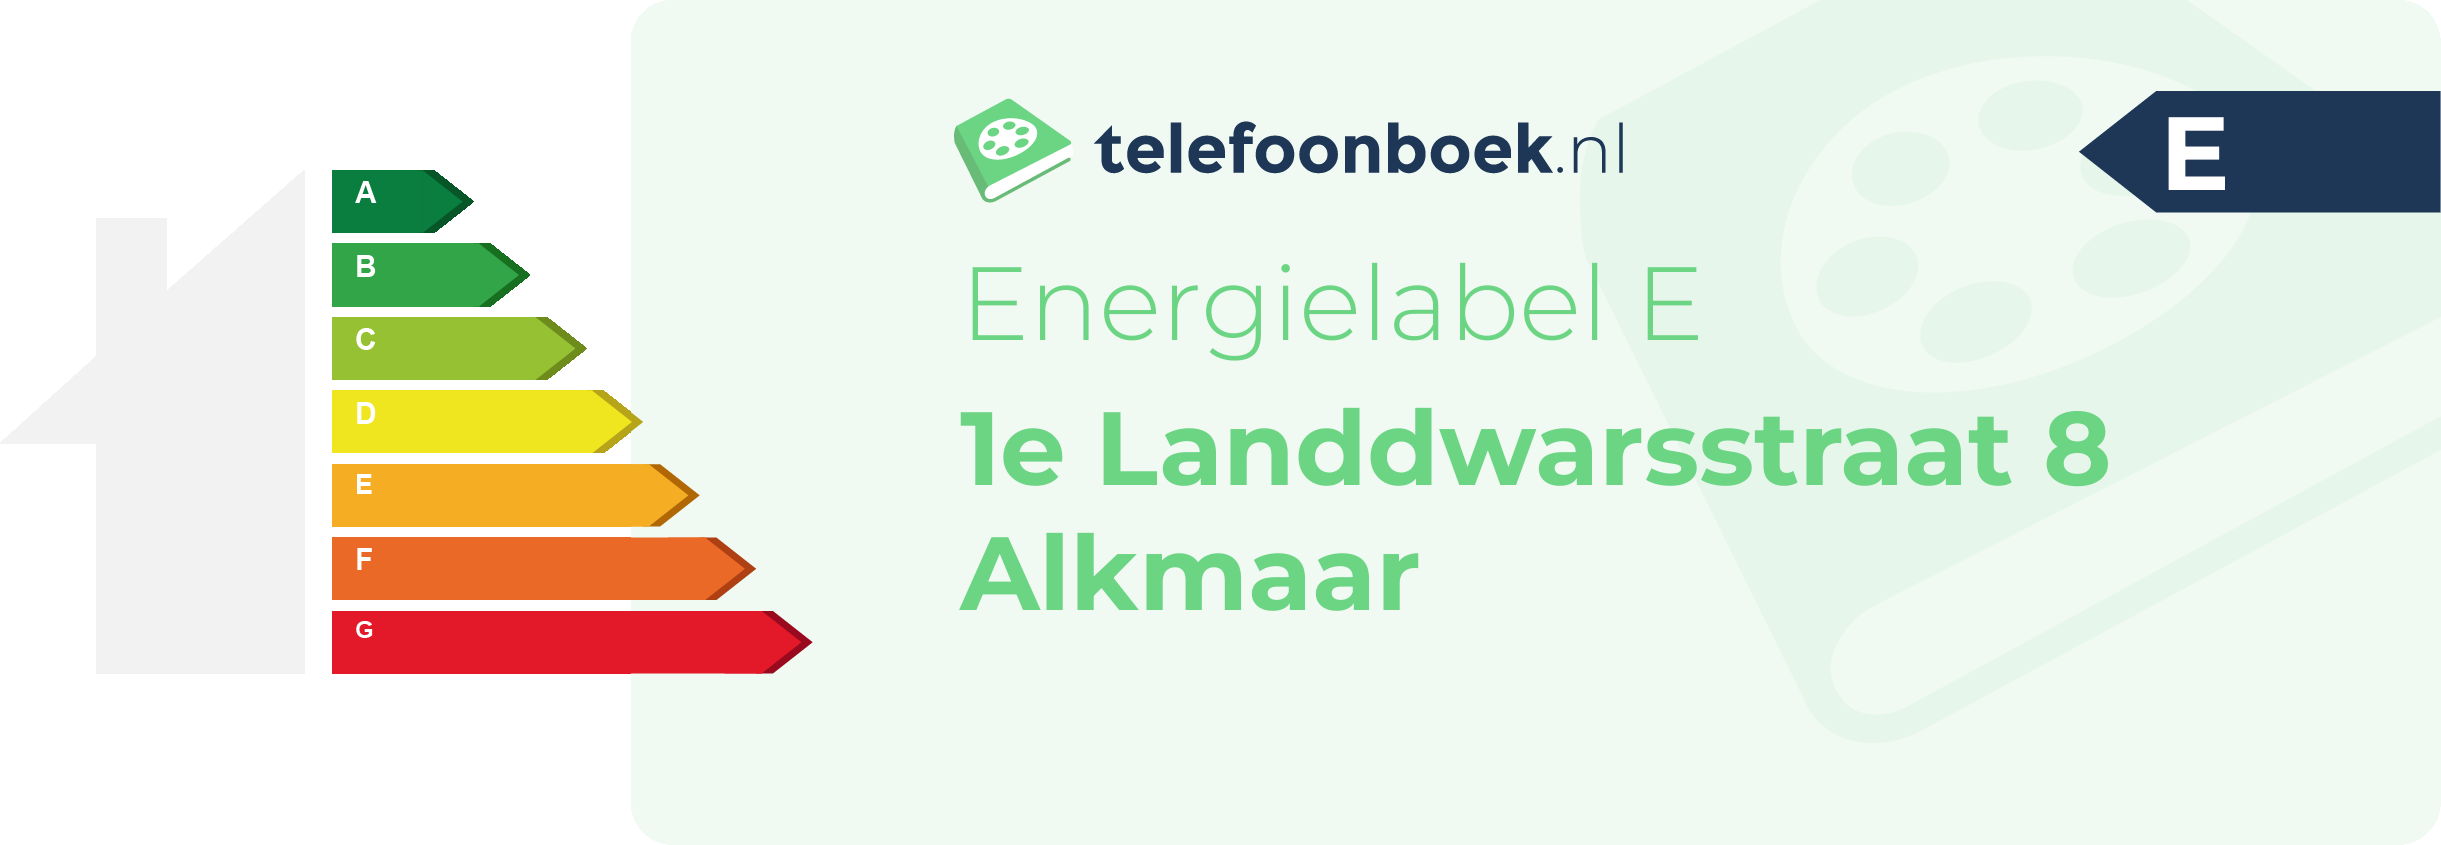 Energielabel 1e Landdwarsstraat 8 Alkmaar